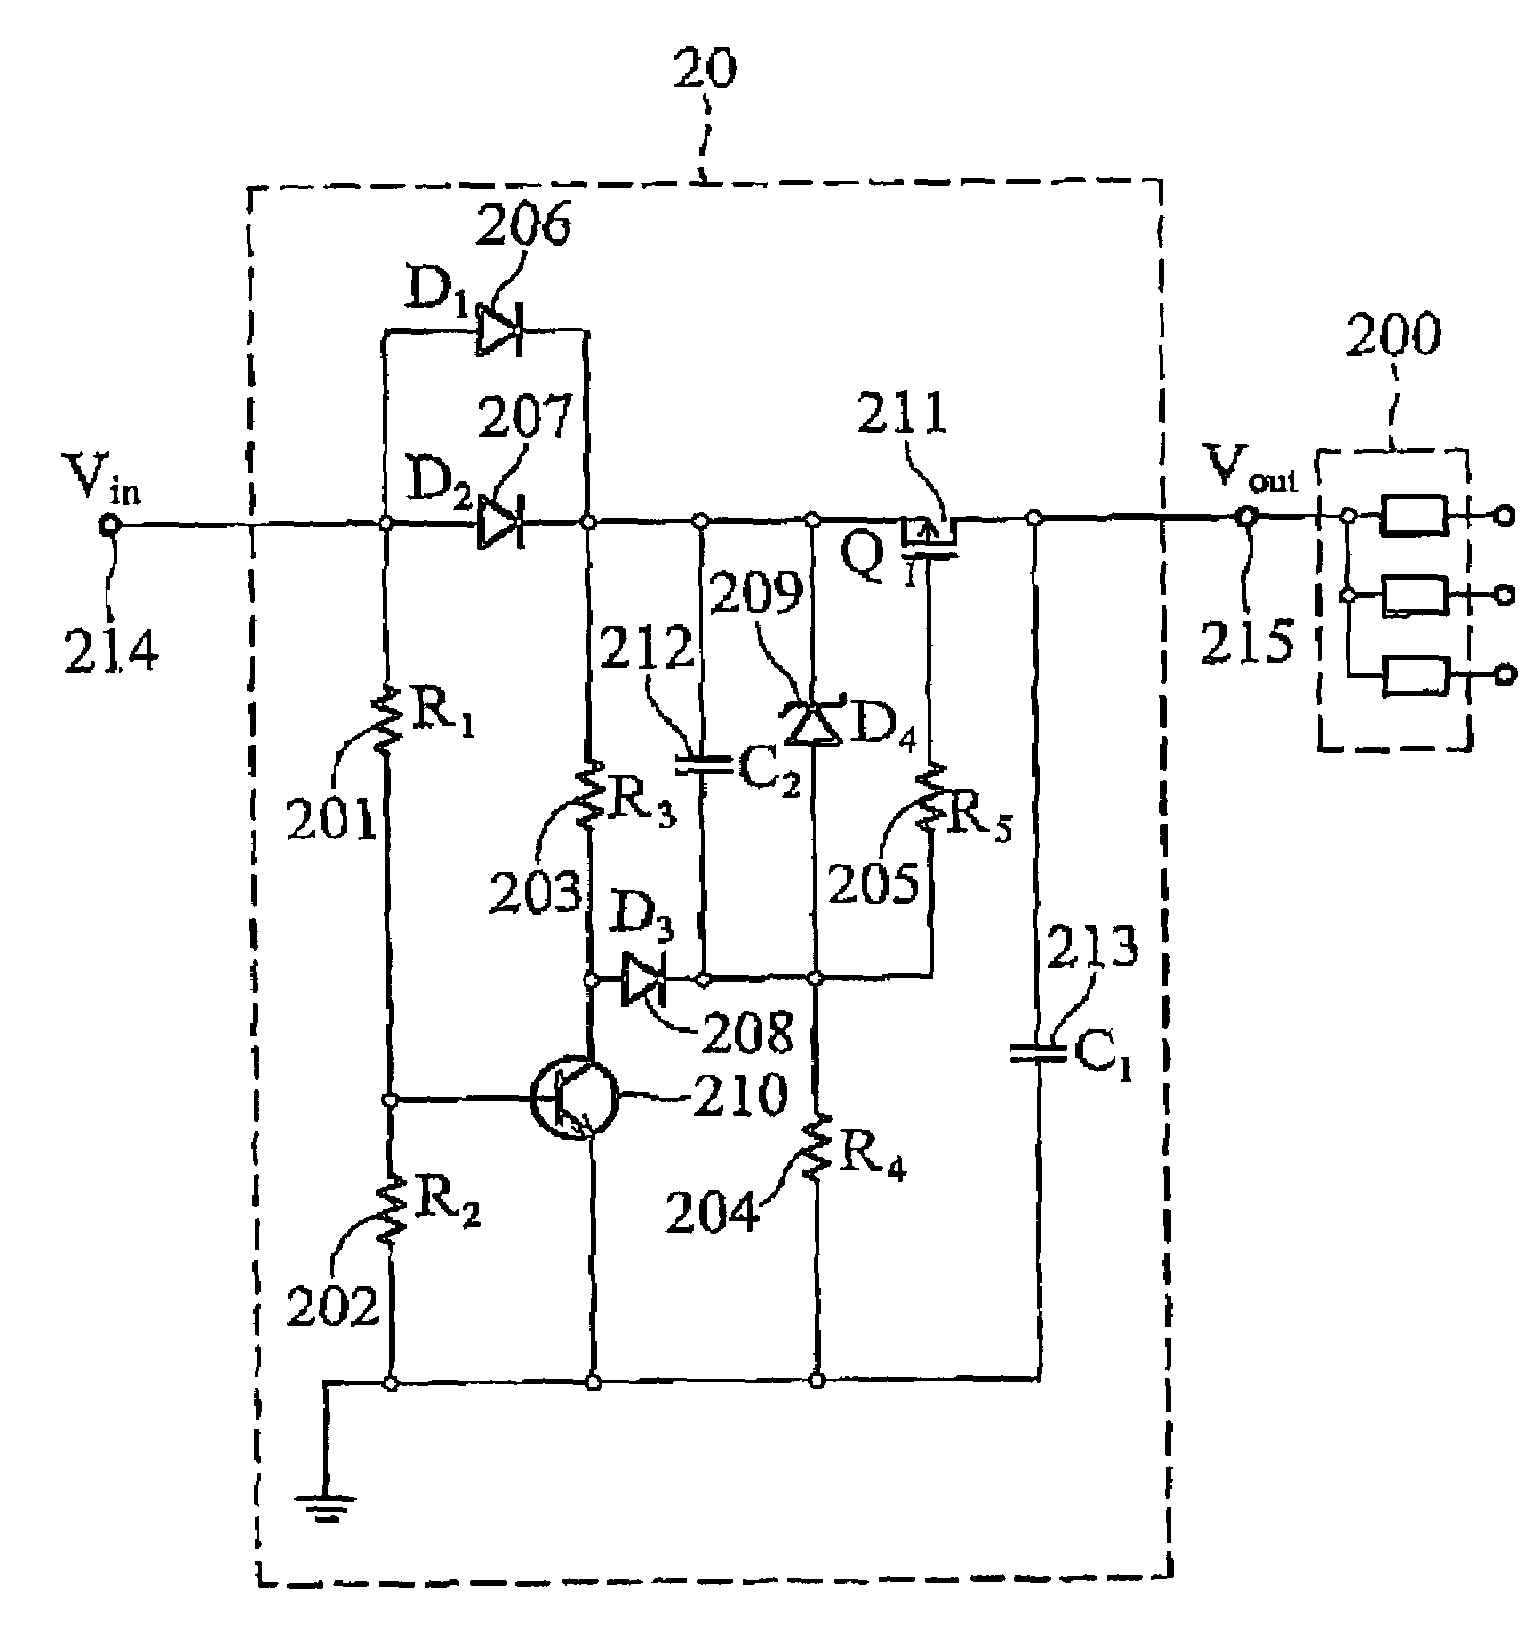 Hot-swap circuit system for fan tray module